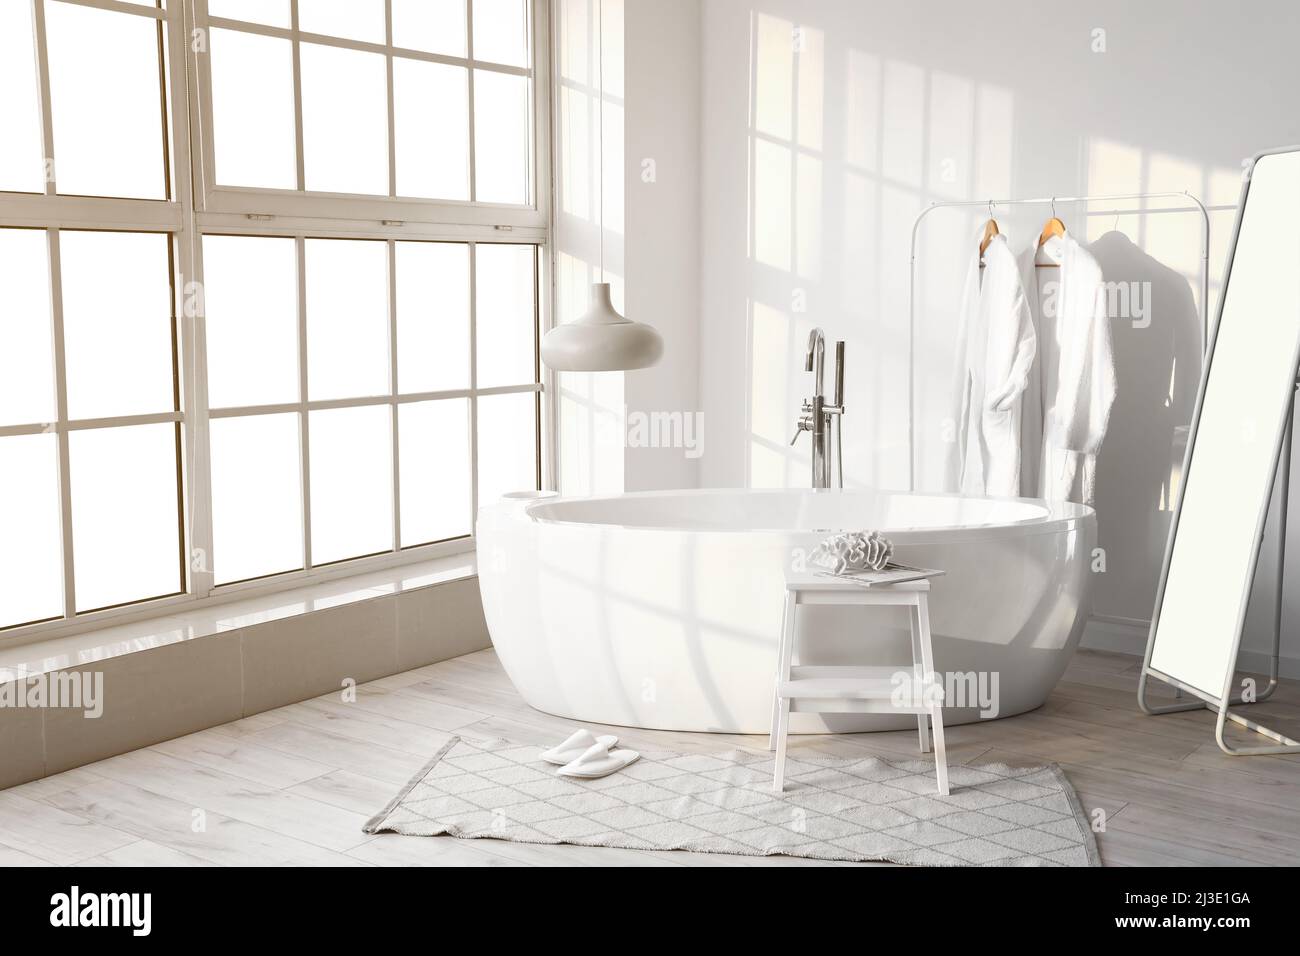 Interior de un elegante baño con bañera, tendedero con albornoces